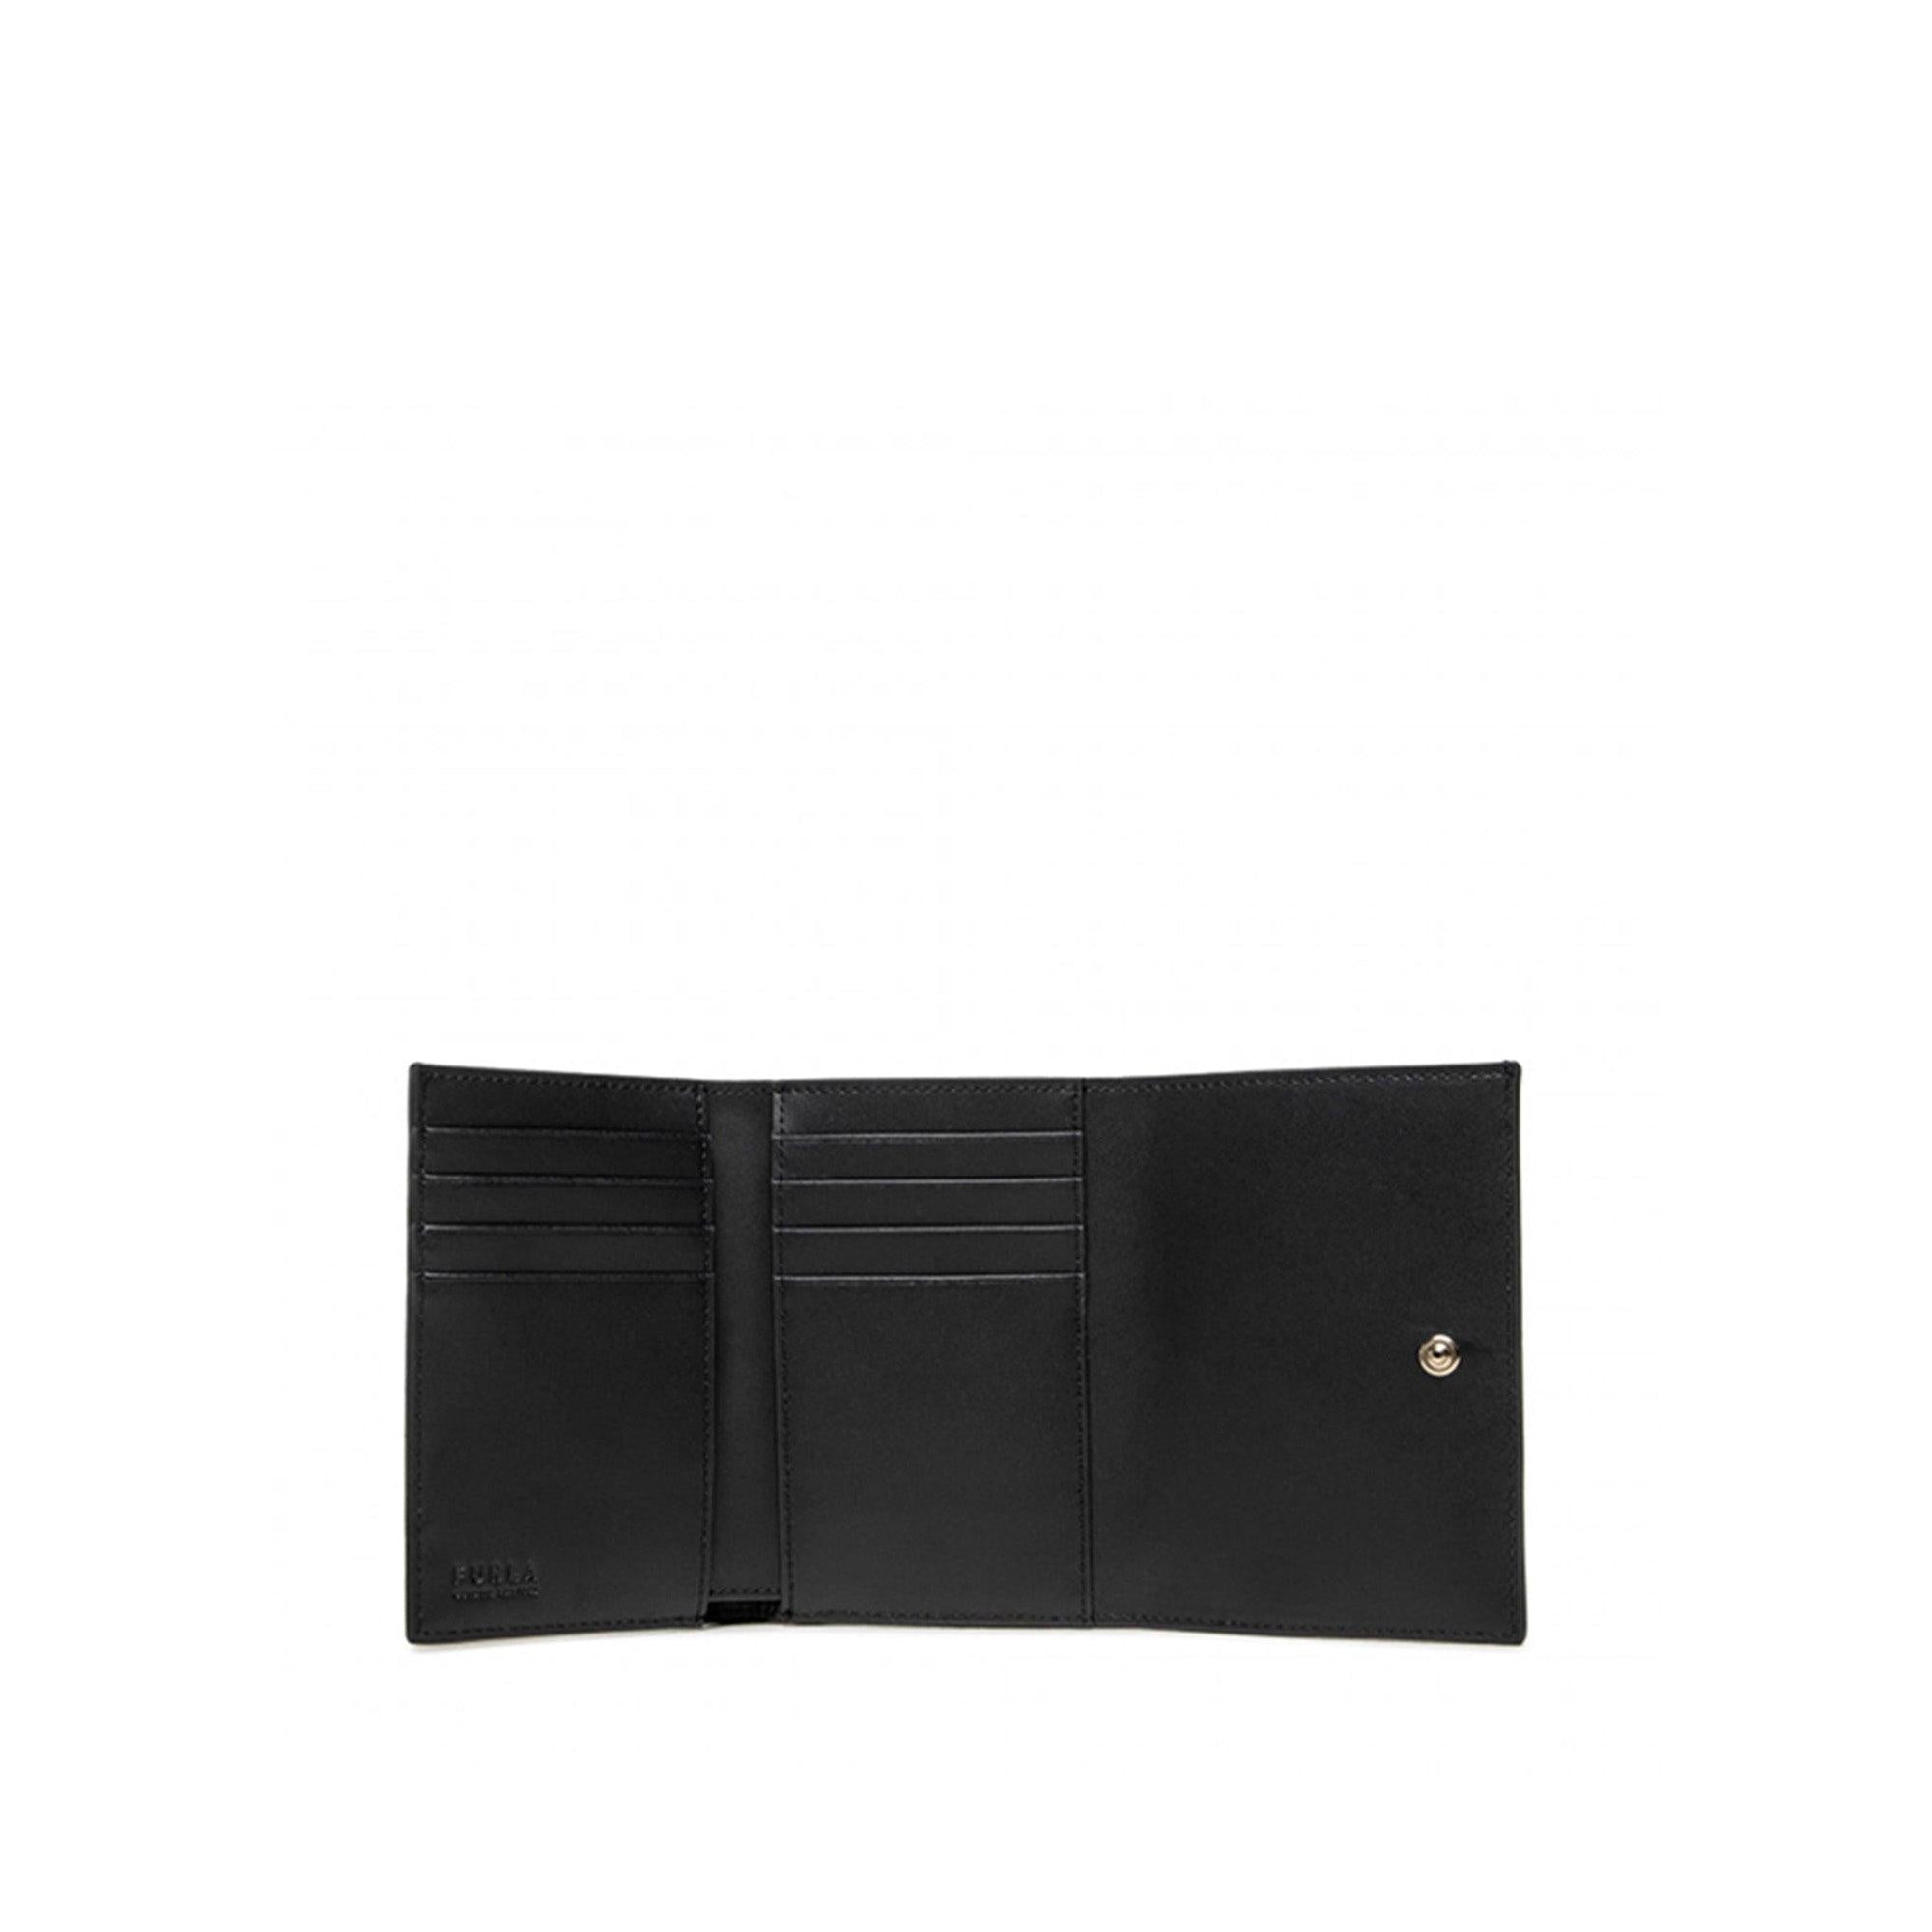 Furla Sirena M Compact Wallet - InstaRunway.com